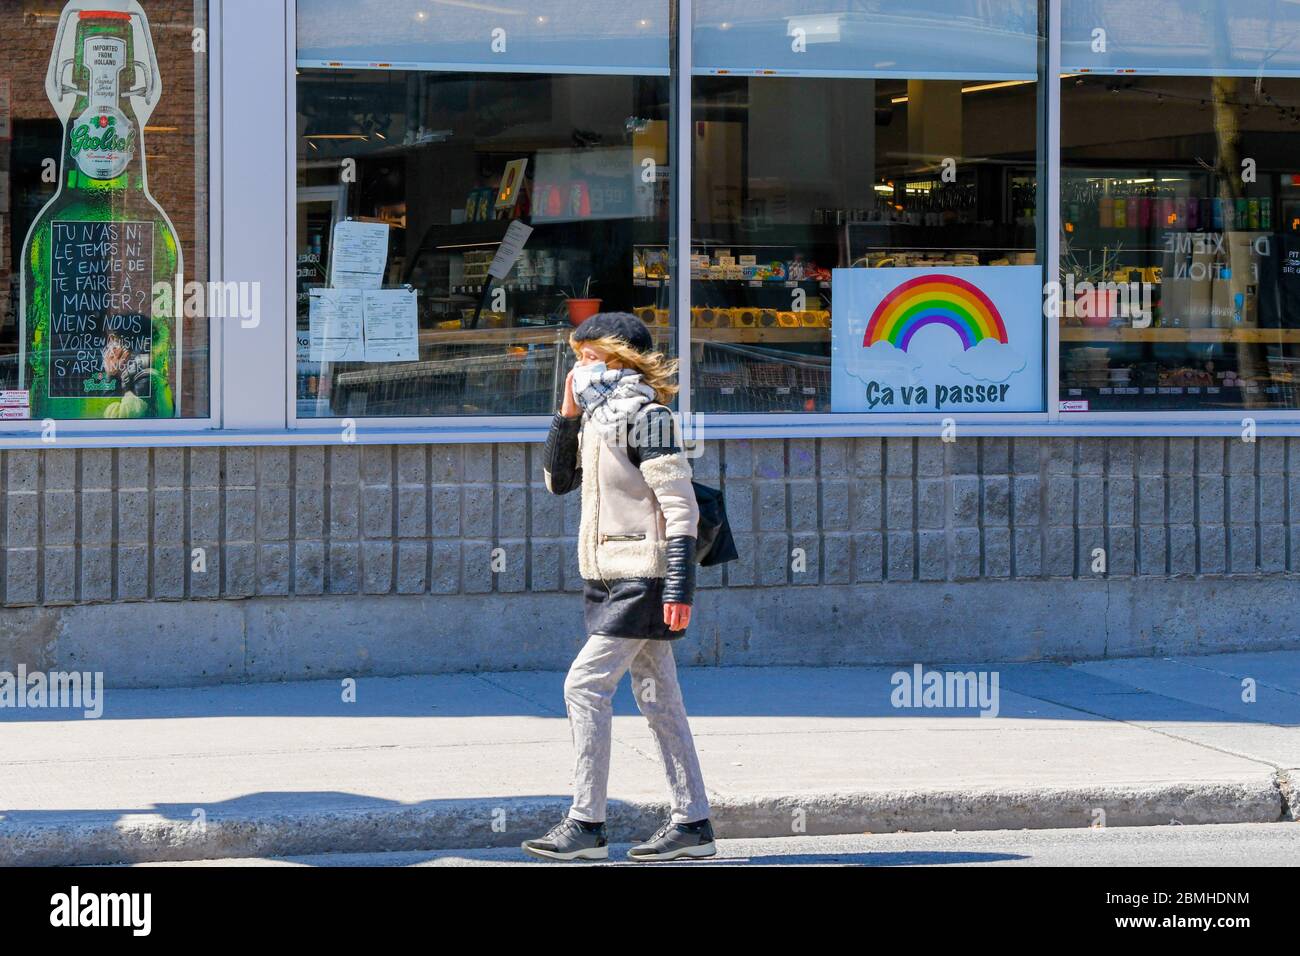 Persona que lleva una máscara protectora y una bufanda que camina delante de una tienda con un covid 19 arco iris de esperanza en ella (el cartel dice en francés: Pasará) , Montreal Canadá Foto de stock